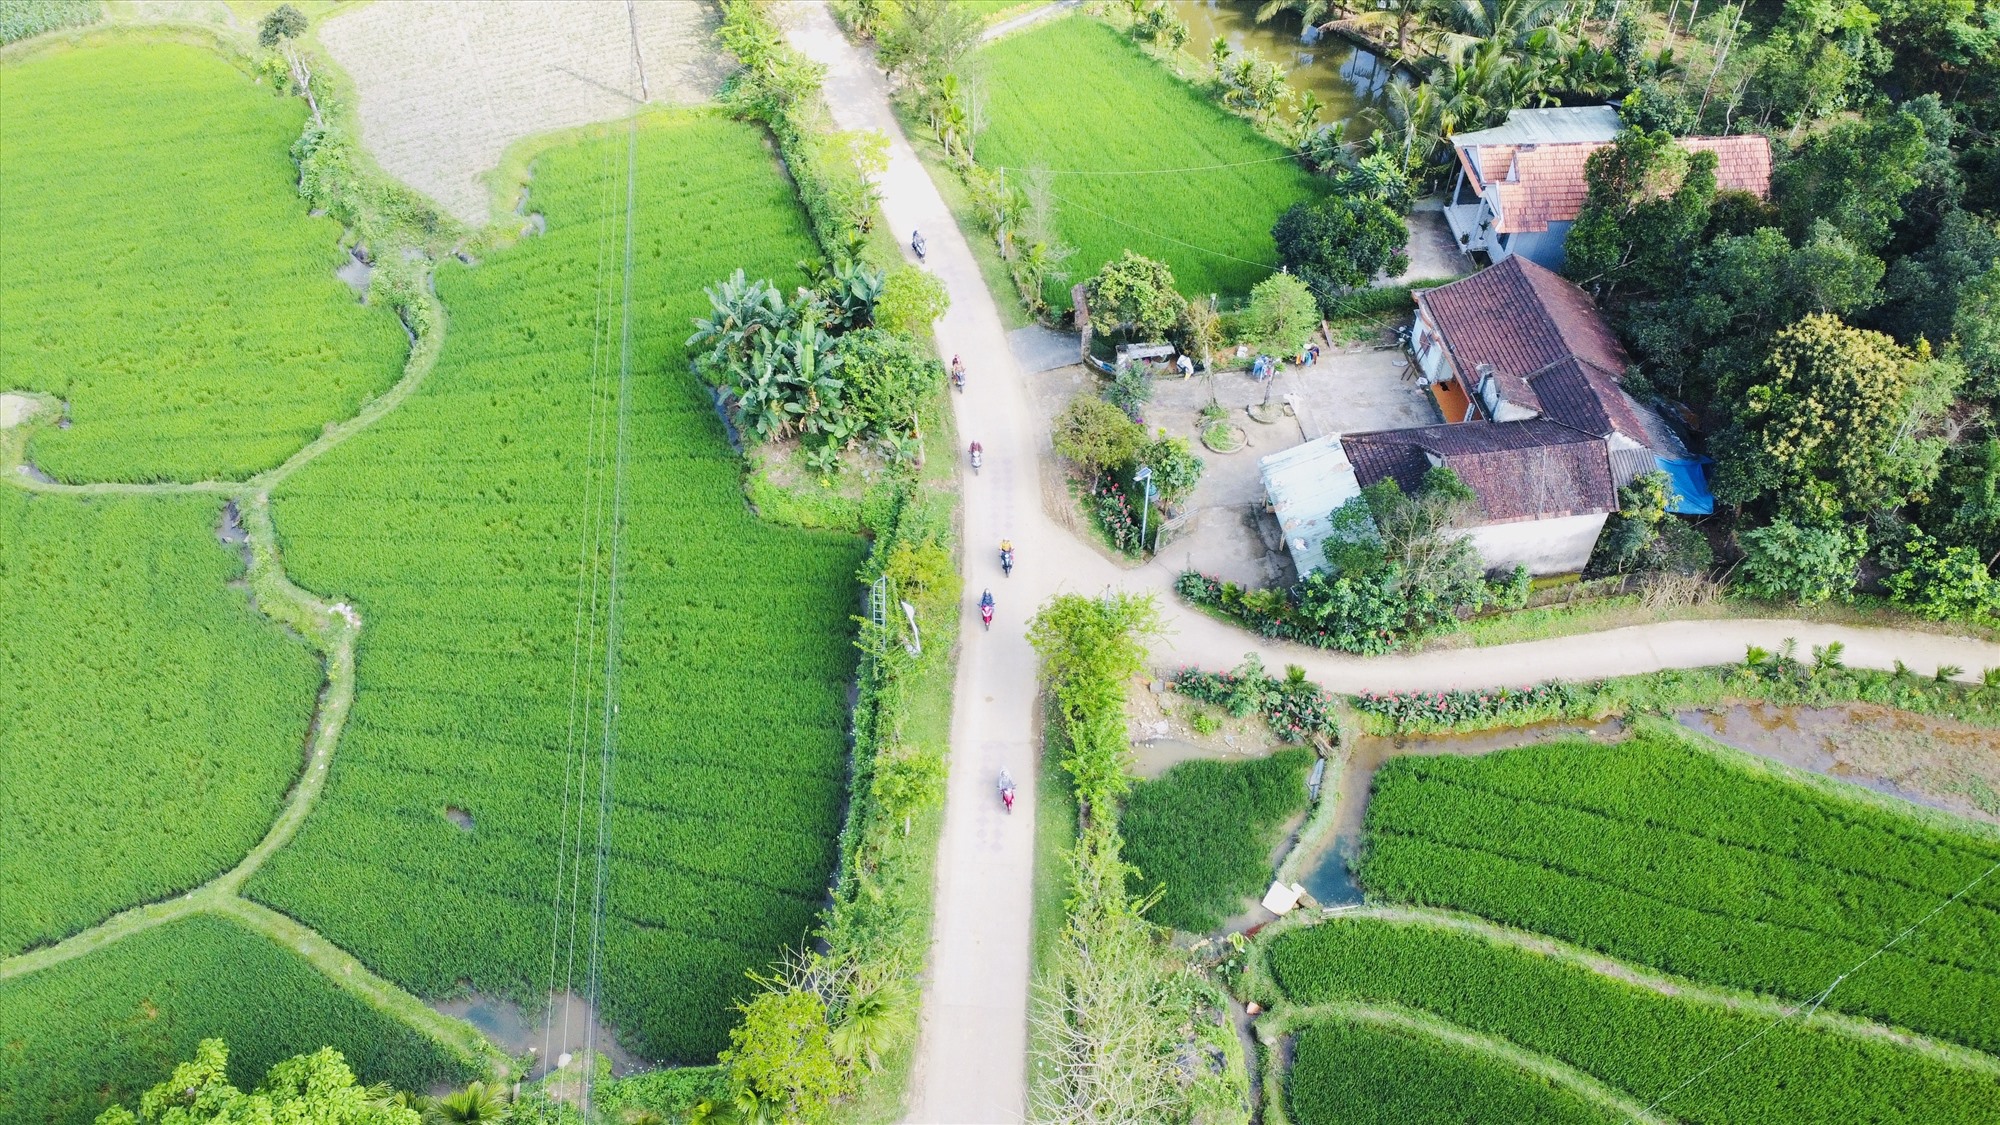 Đây là một làng cổ đẹp ở Quảng Nam còn nhiều nhà cổ, chưa bao giờ khóa cổng, thoải mái vô chụp ảnh, quay phim - Ảnh 2.